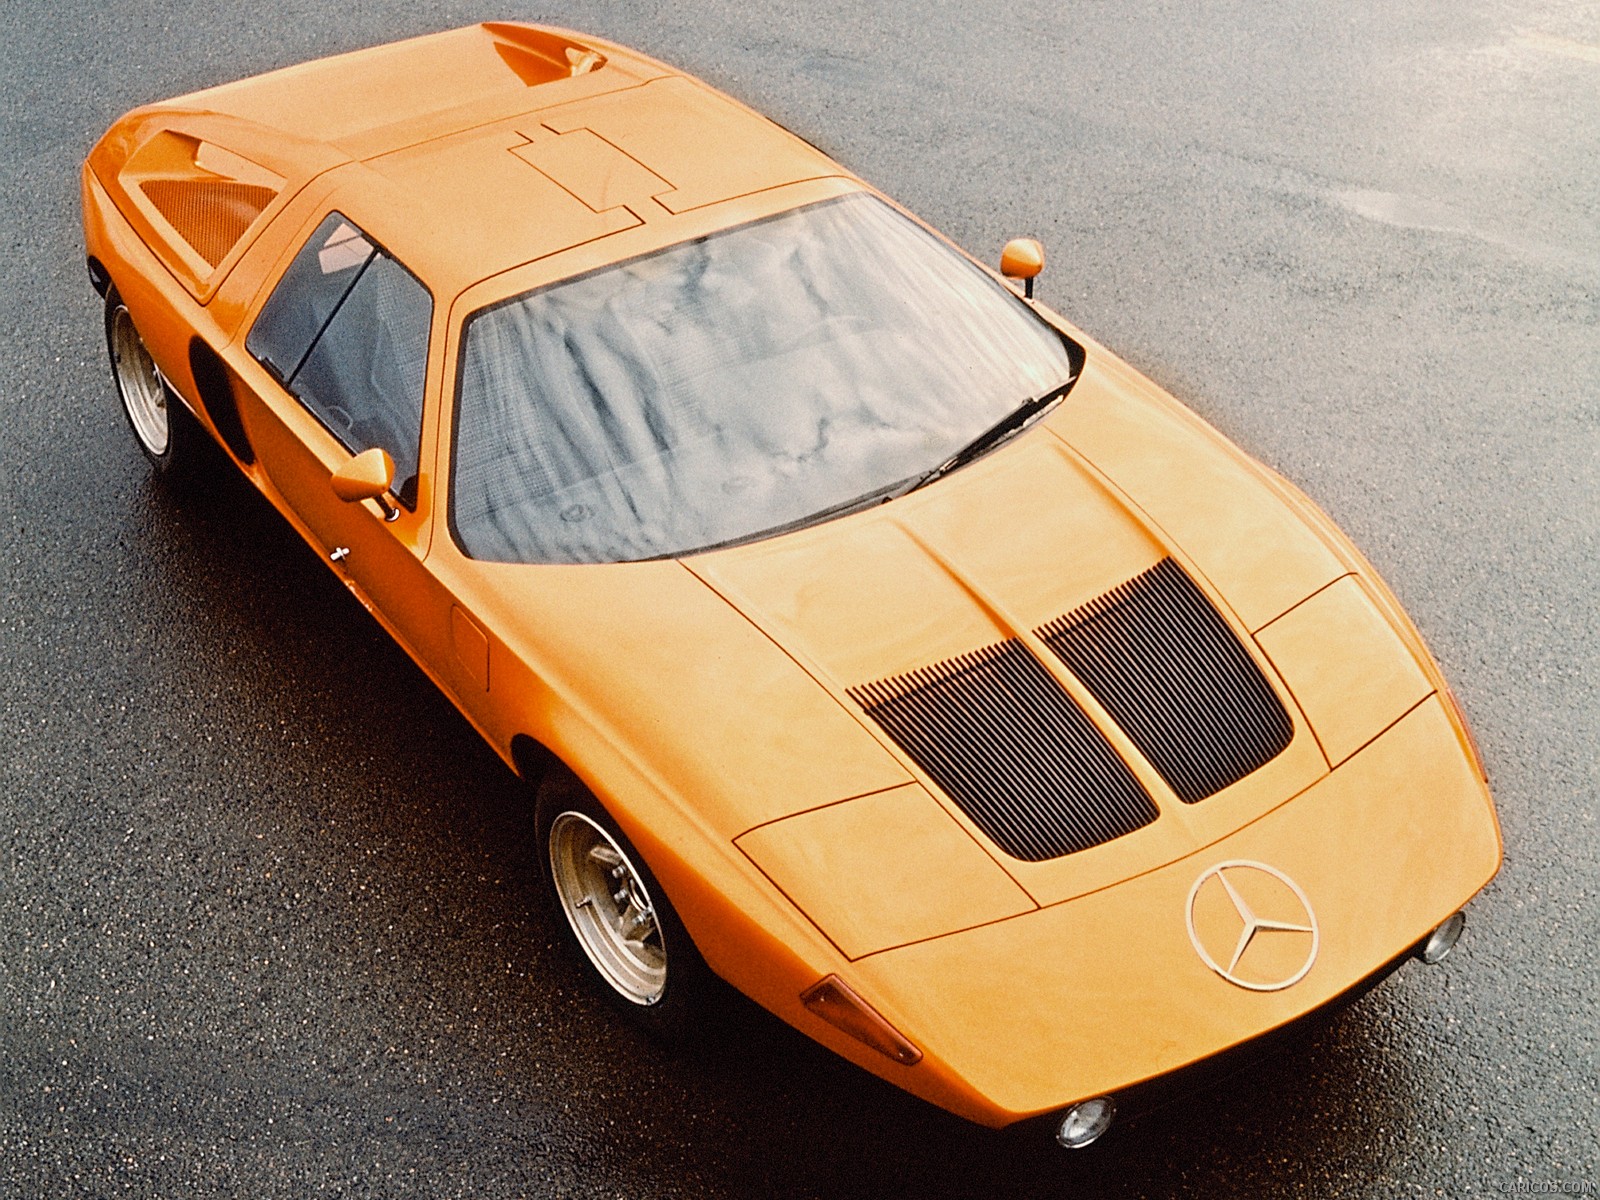 1970 Mercedes-Benz C 111 II Concept  - Top, #2 of 13